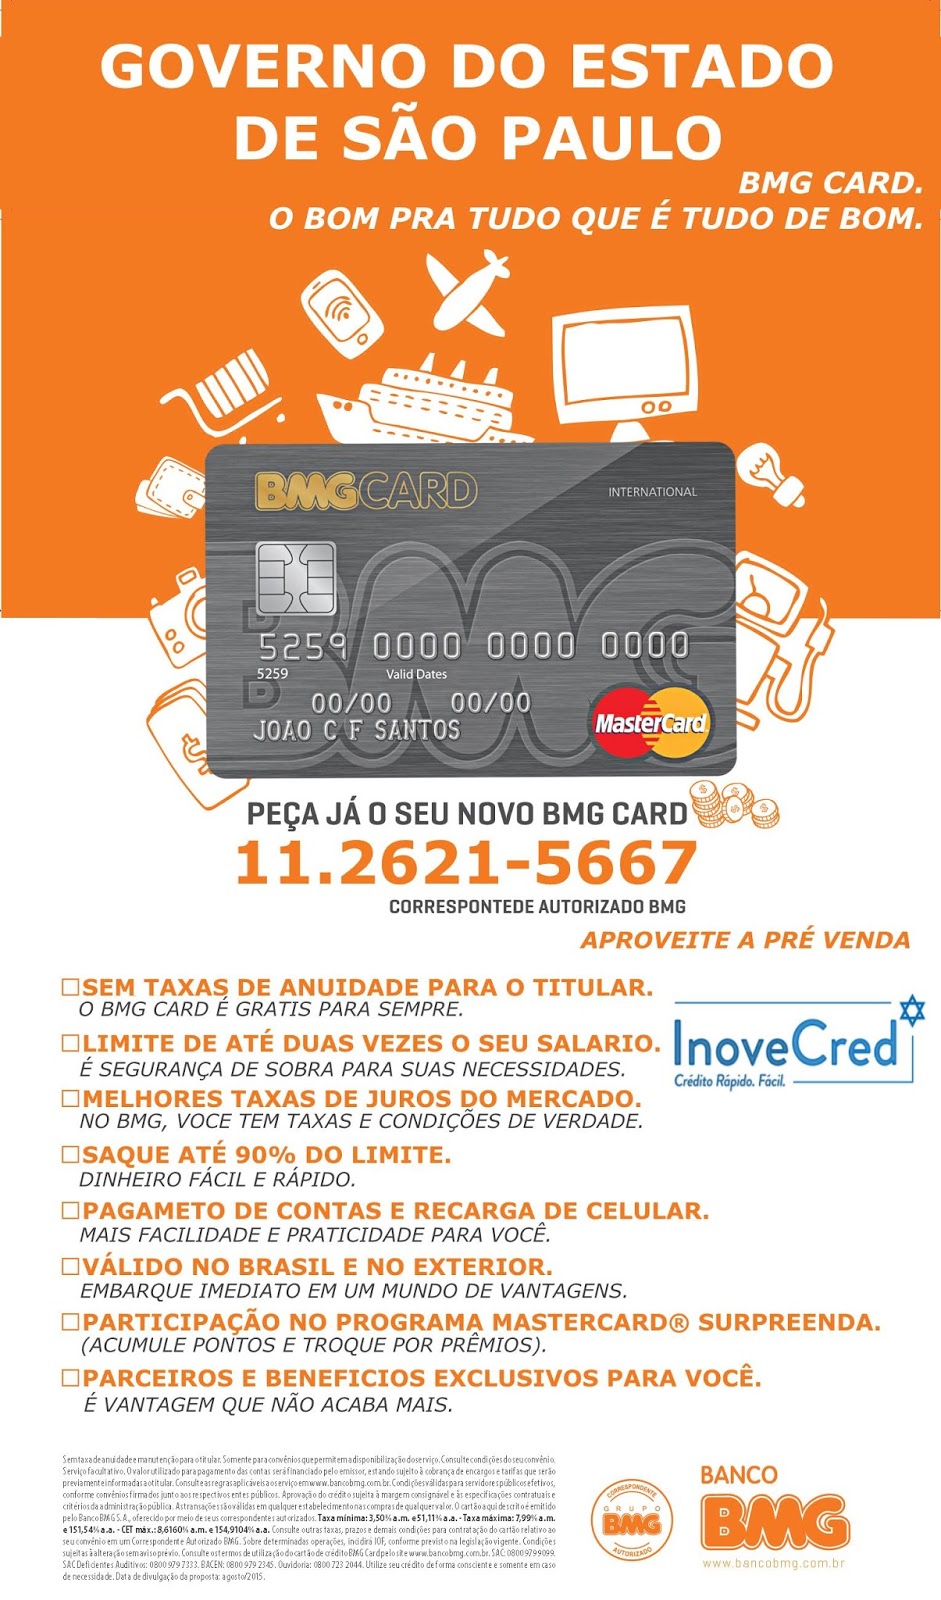 Inove Cred - Empréstimo Consignado - BMG CARG GOVERNO DO 